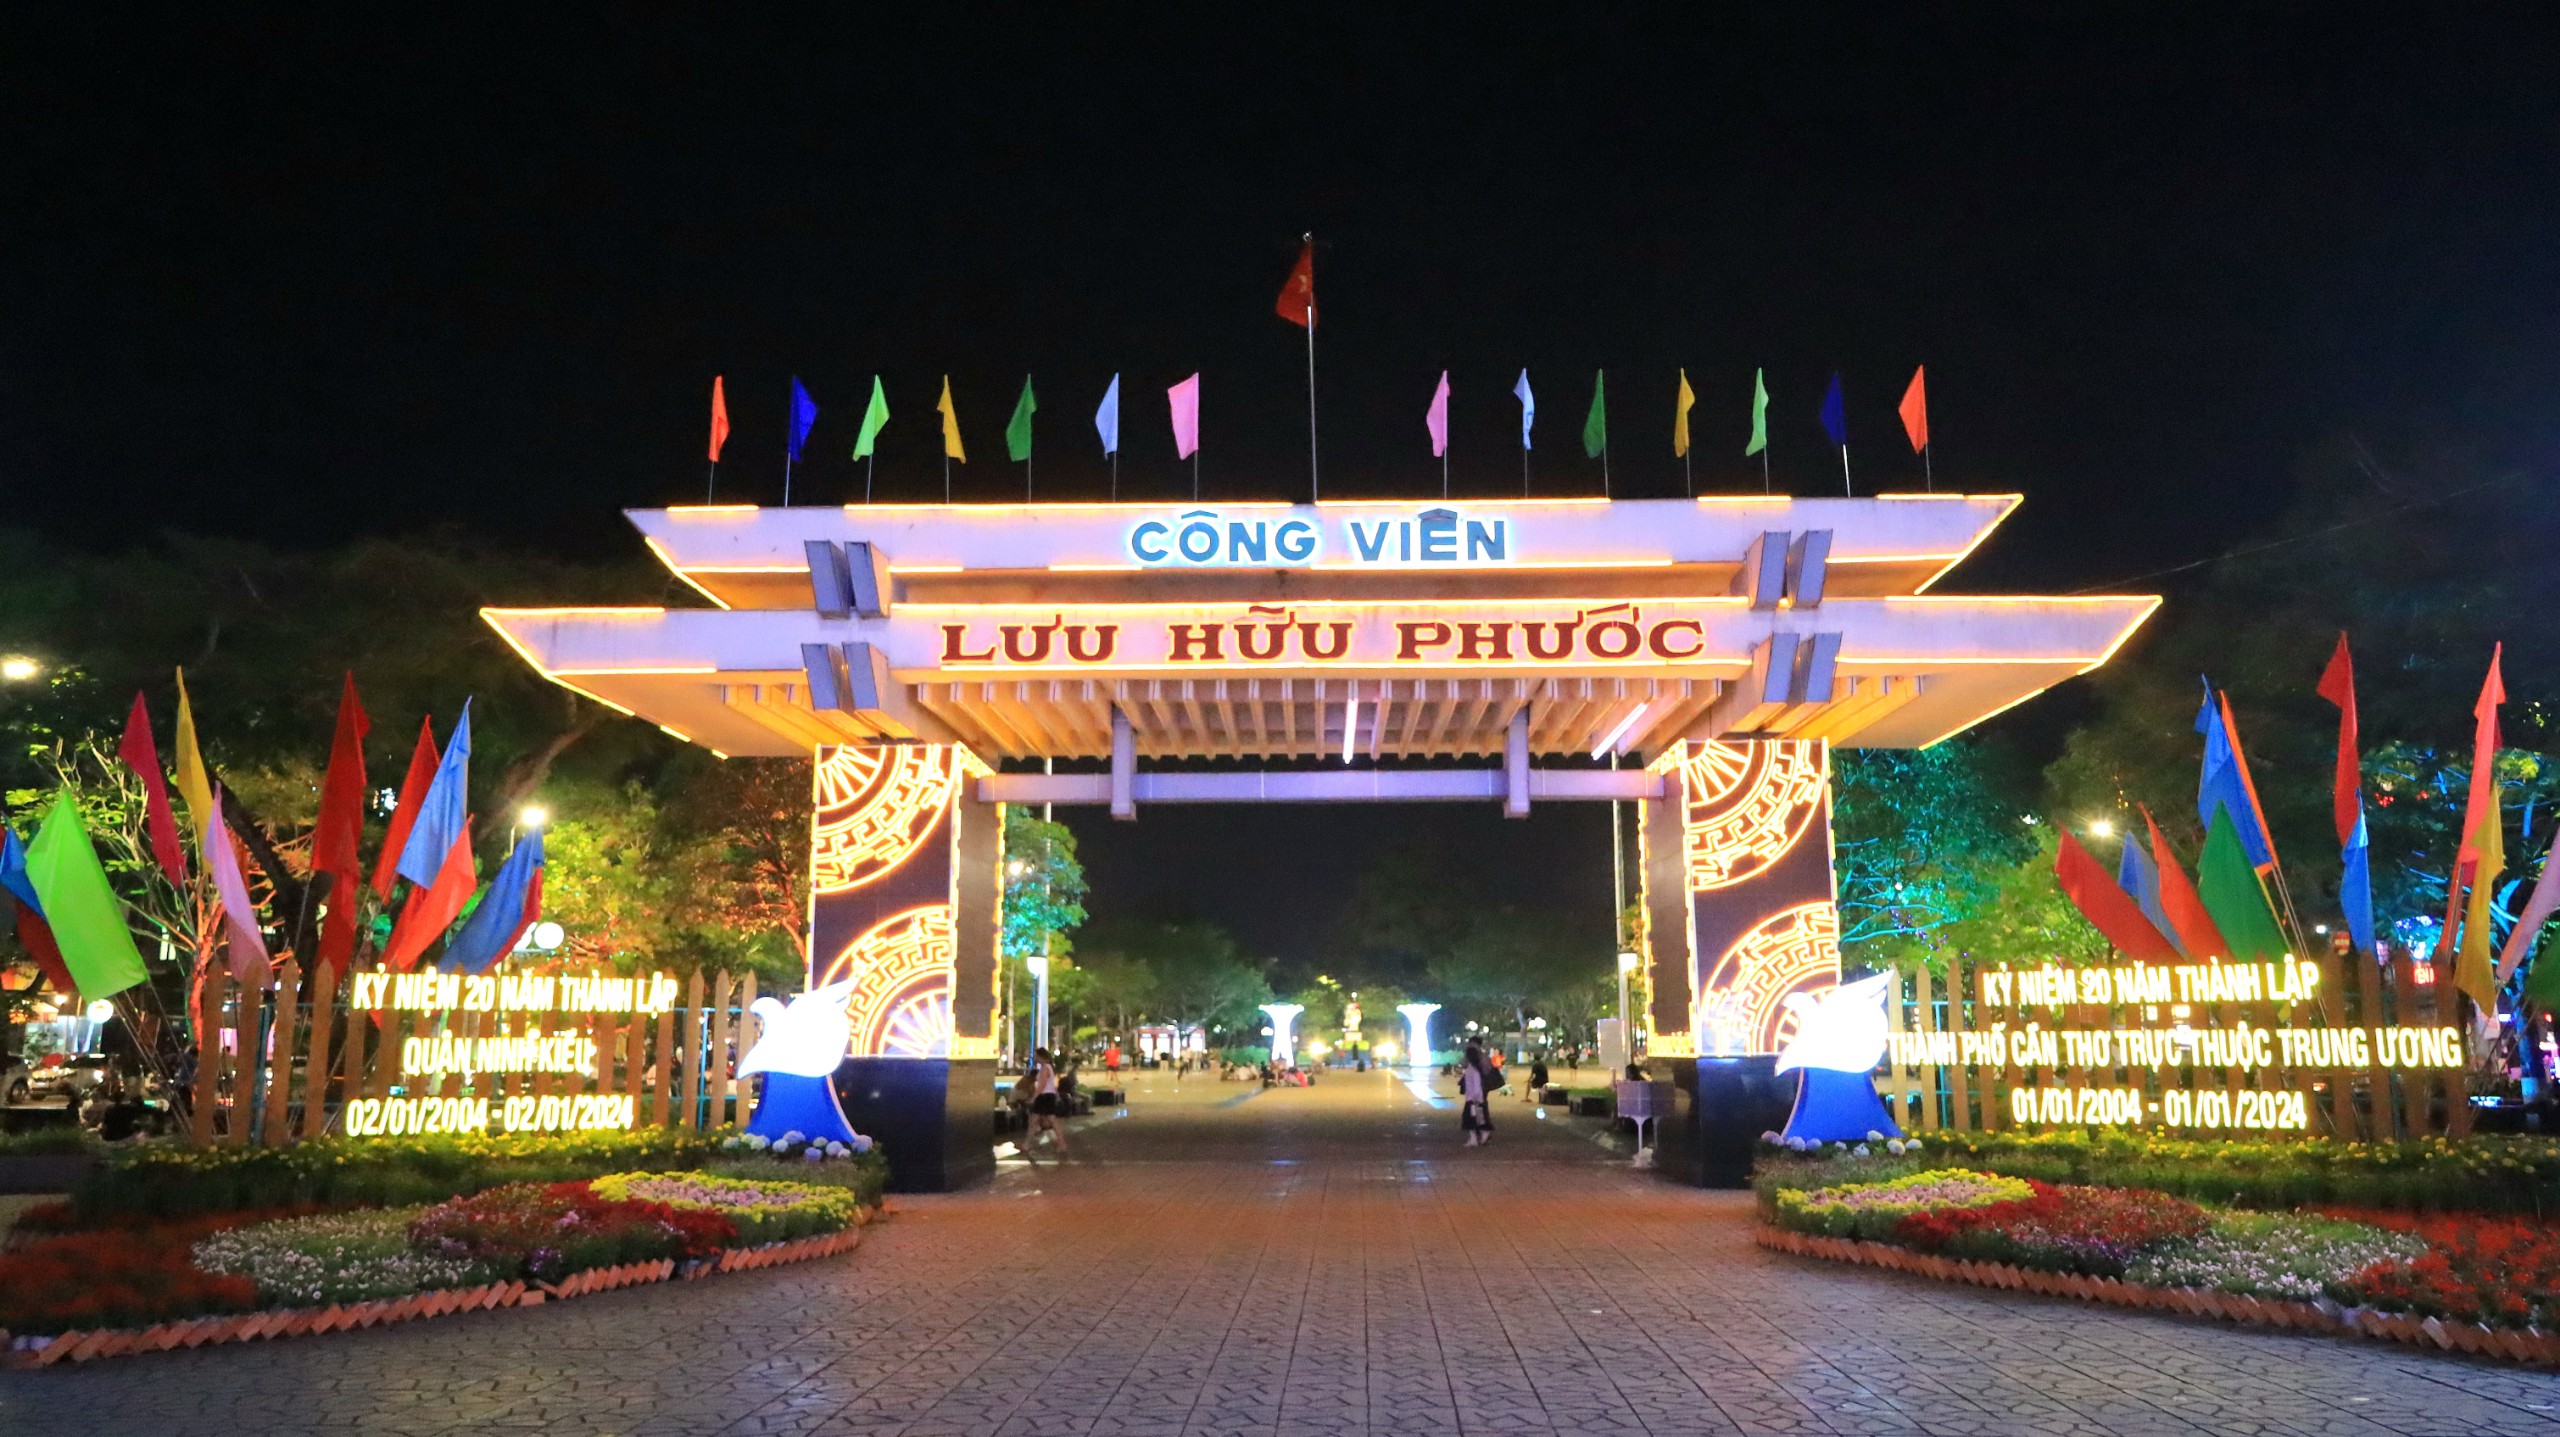 Khu vực Công viên Lưu Hữu Phước, quận Ninh Kiều được trang trí lung linh, rực rỡ để chào đón sự kiện trọng đại của thành phố.